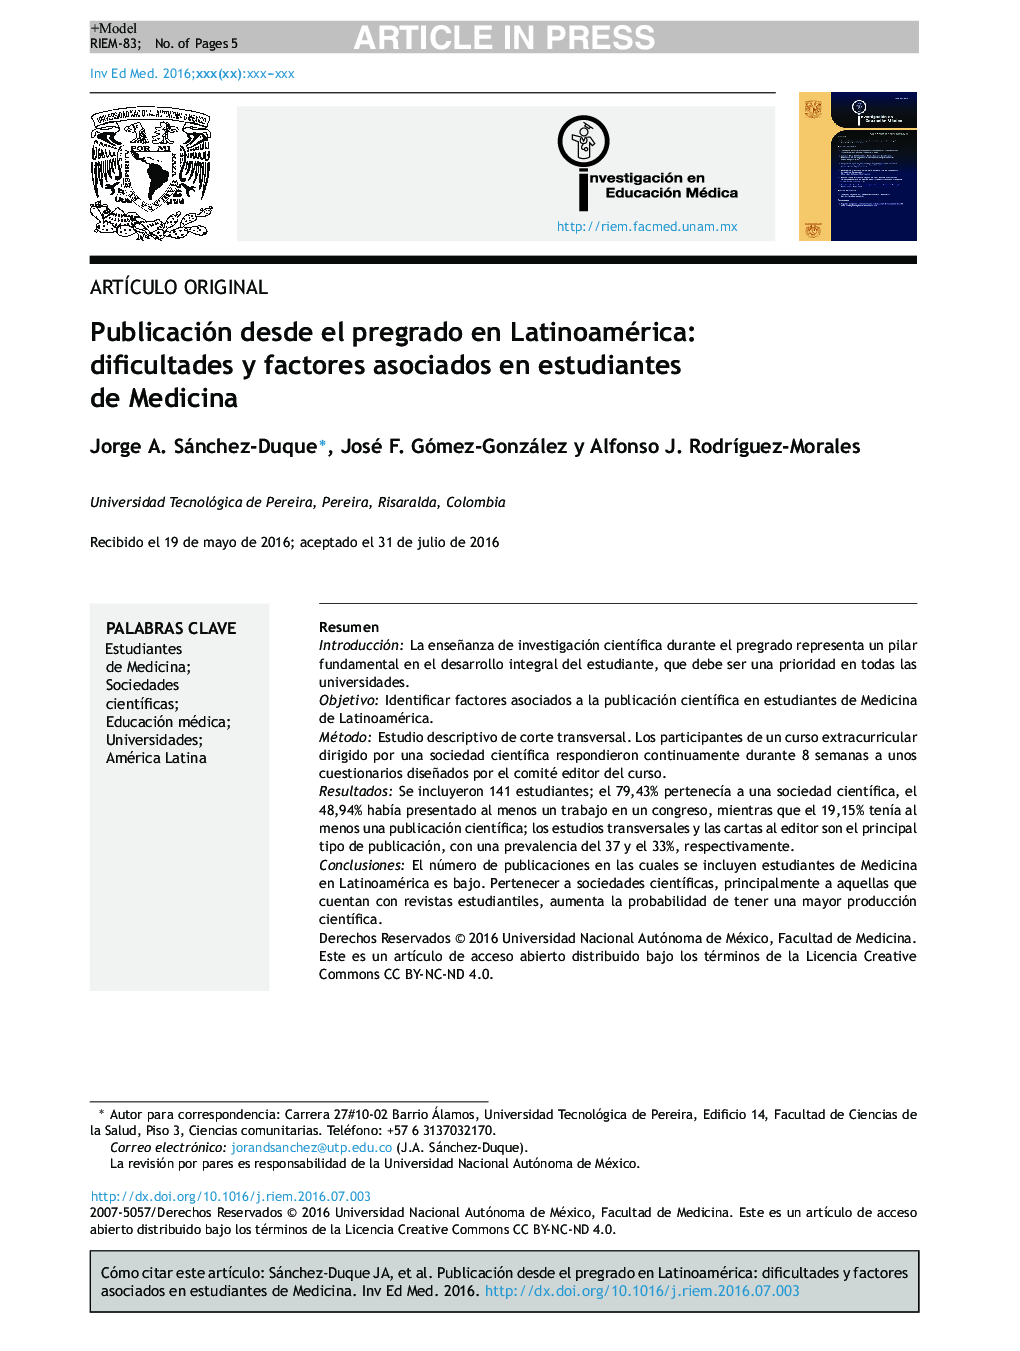 Publicación desde el pregrado en Latinoamérica: dificultades y factores asociados en estudiantes de Medicina